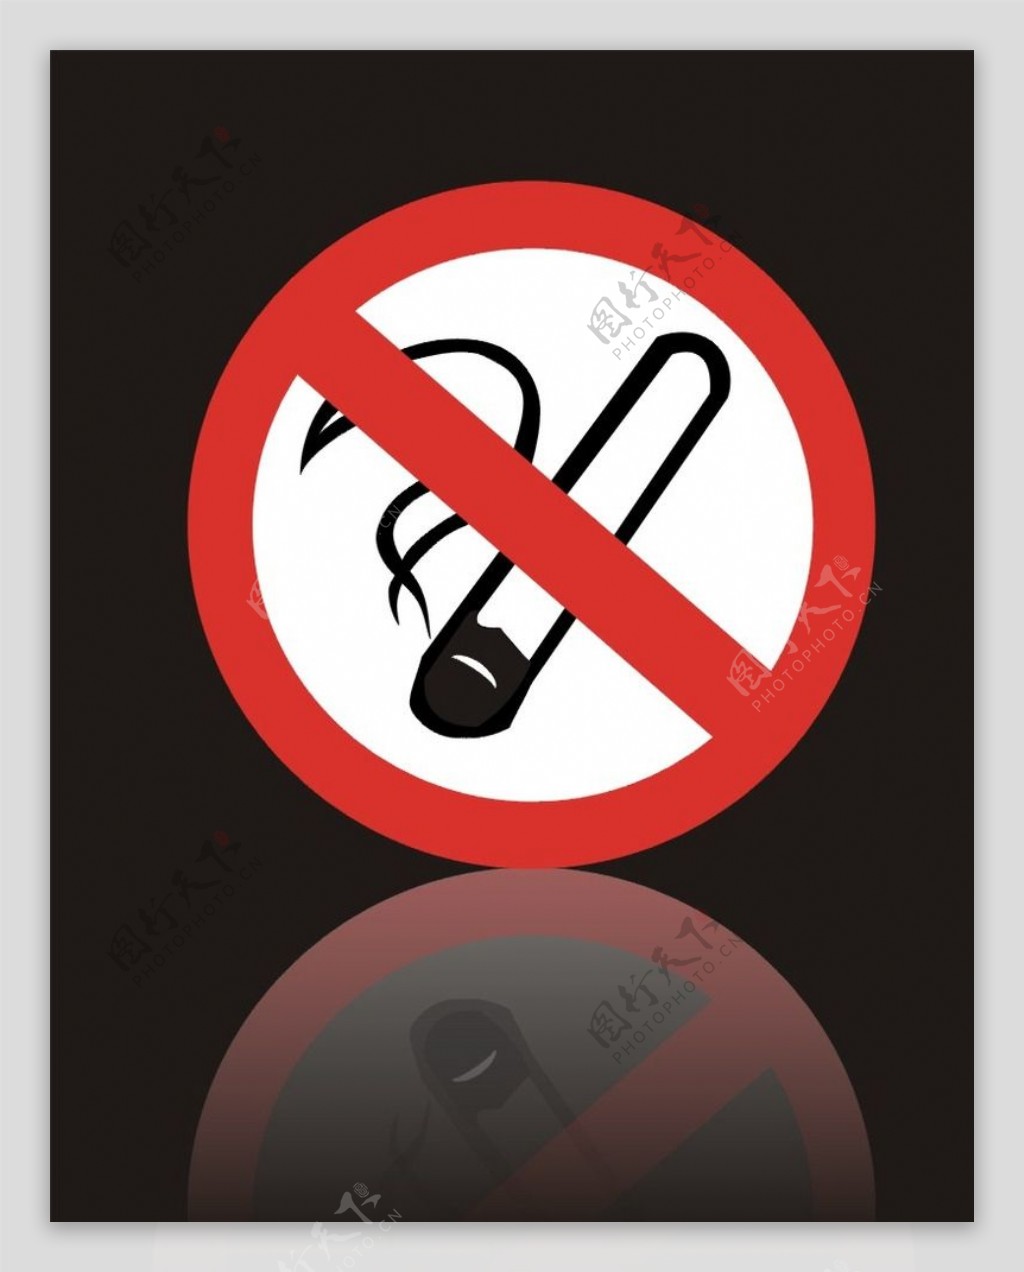 严禁吸烟标志